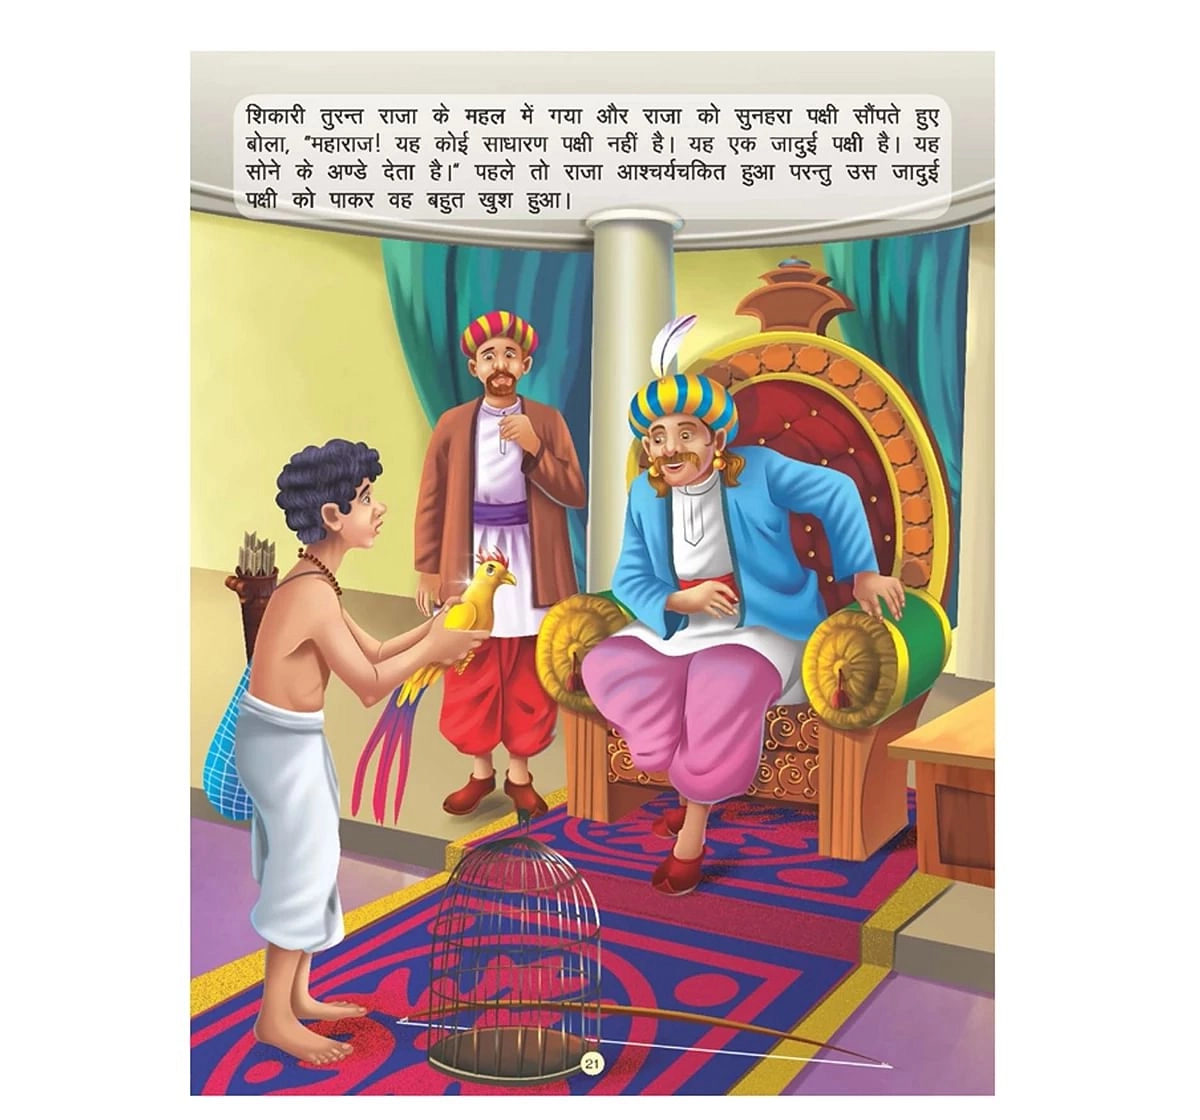 Dreamland Paper Back Imandar Lakadhara Panchtantra Ki Kahaniyan Story Books for kids 4Y+, Multicolour